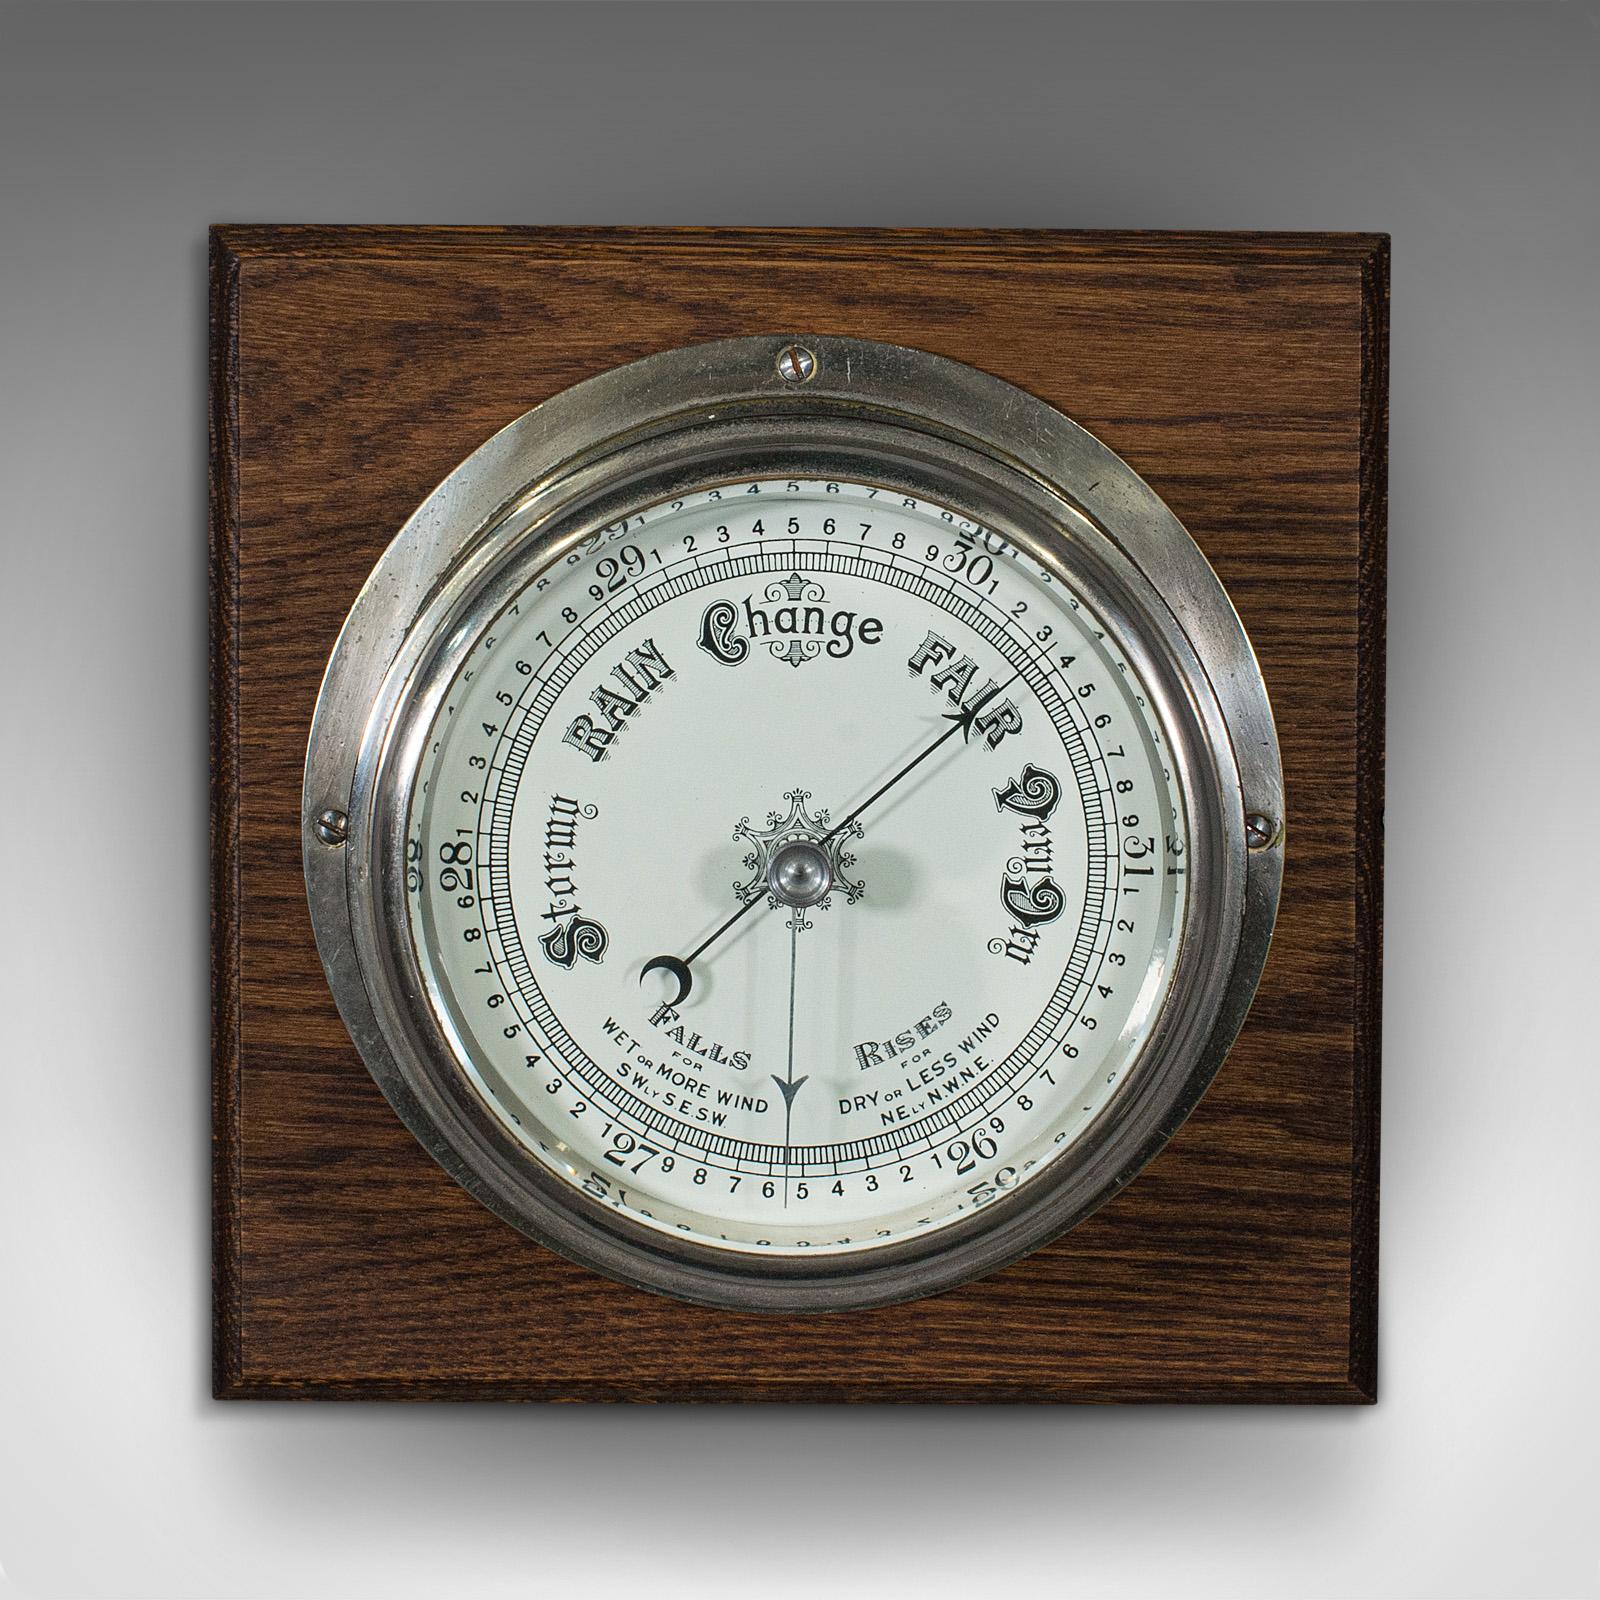 Es handelt sich um ein antikes Schiffsbarometer mit Glühbirnenkopf. Englisches, versilbertes maritimes Wetterinstrument aus Messing und Eiche aus der spätviktorianischen Zeit, um 1900.

Seltenes maritimes Instrument, mit feiner Präsentation.
Sie